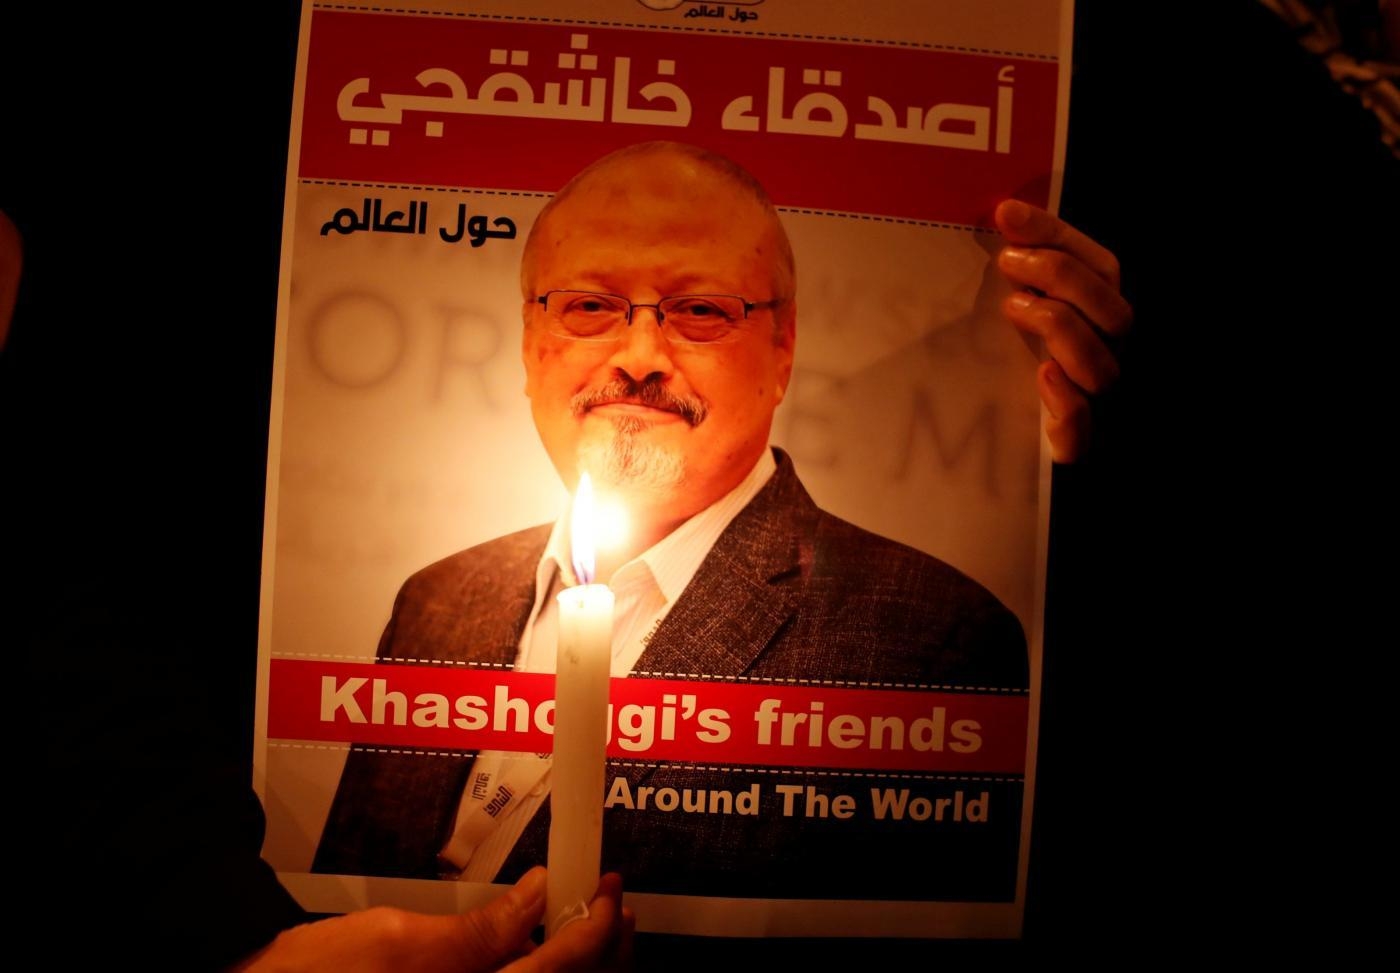 Des téléphones de proches du journaliste saoudien assassiné, Jamal Khashoggi, ont été également espionnés selon une nouvelle enquête (Reuters)